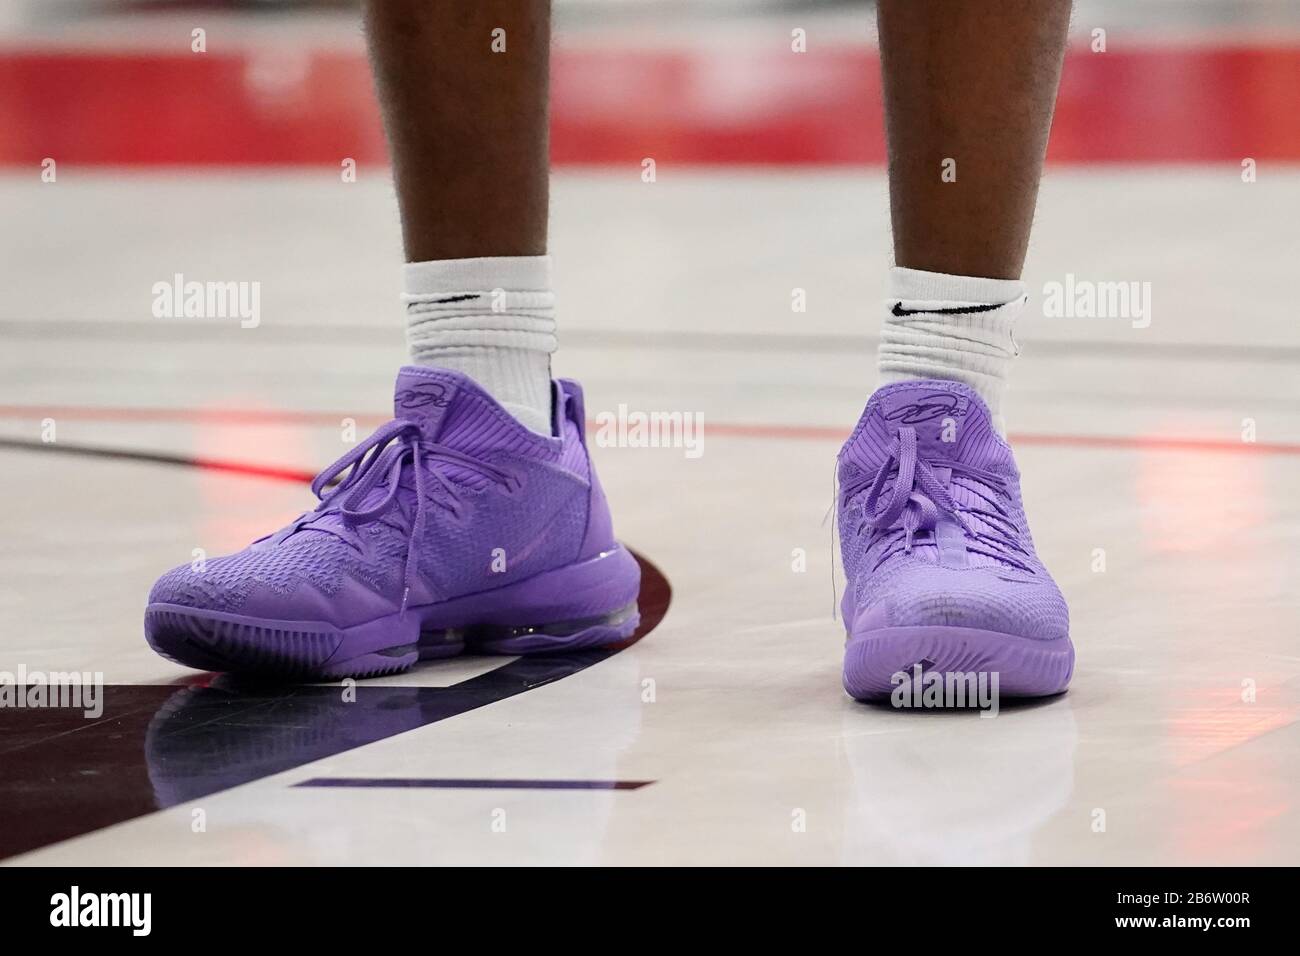 Vista detallada de las zapatillas Nike purple LeBron 16 la guardia de los Trailblazers de Sierra Canyon Bronny James (0) durante un partido de baloncesto de la final de la